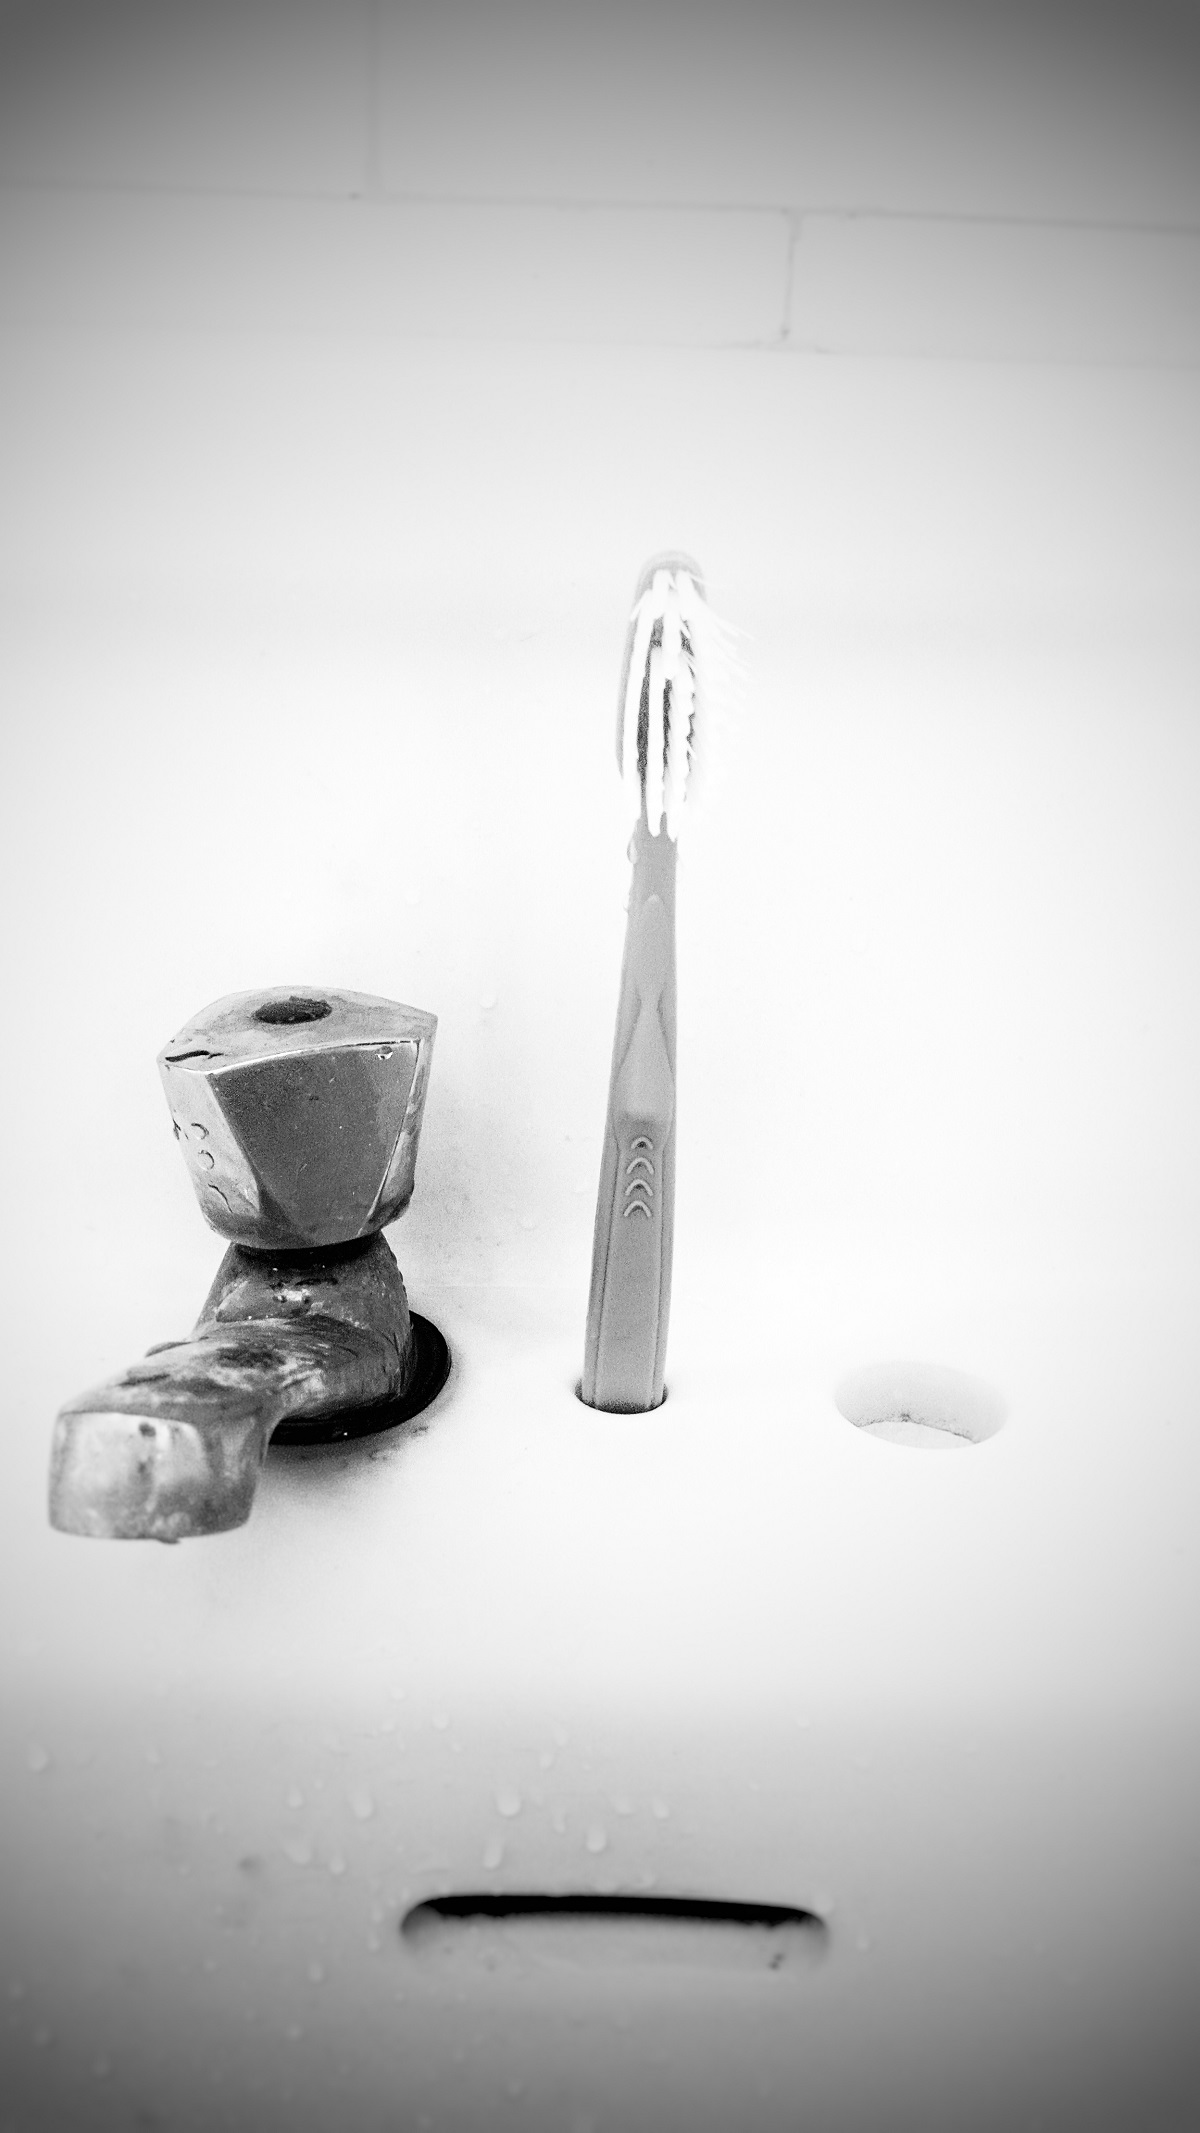 Photo noir et blanc. Elle montre un lavabo sur lequel une brosse à dent est positionnée à la verticale, à droite du robinet.